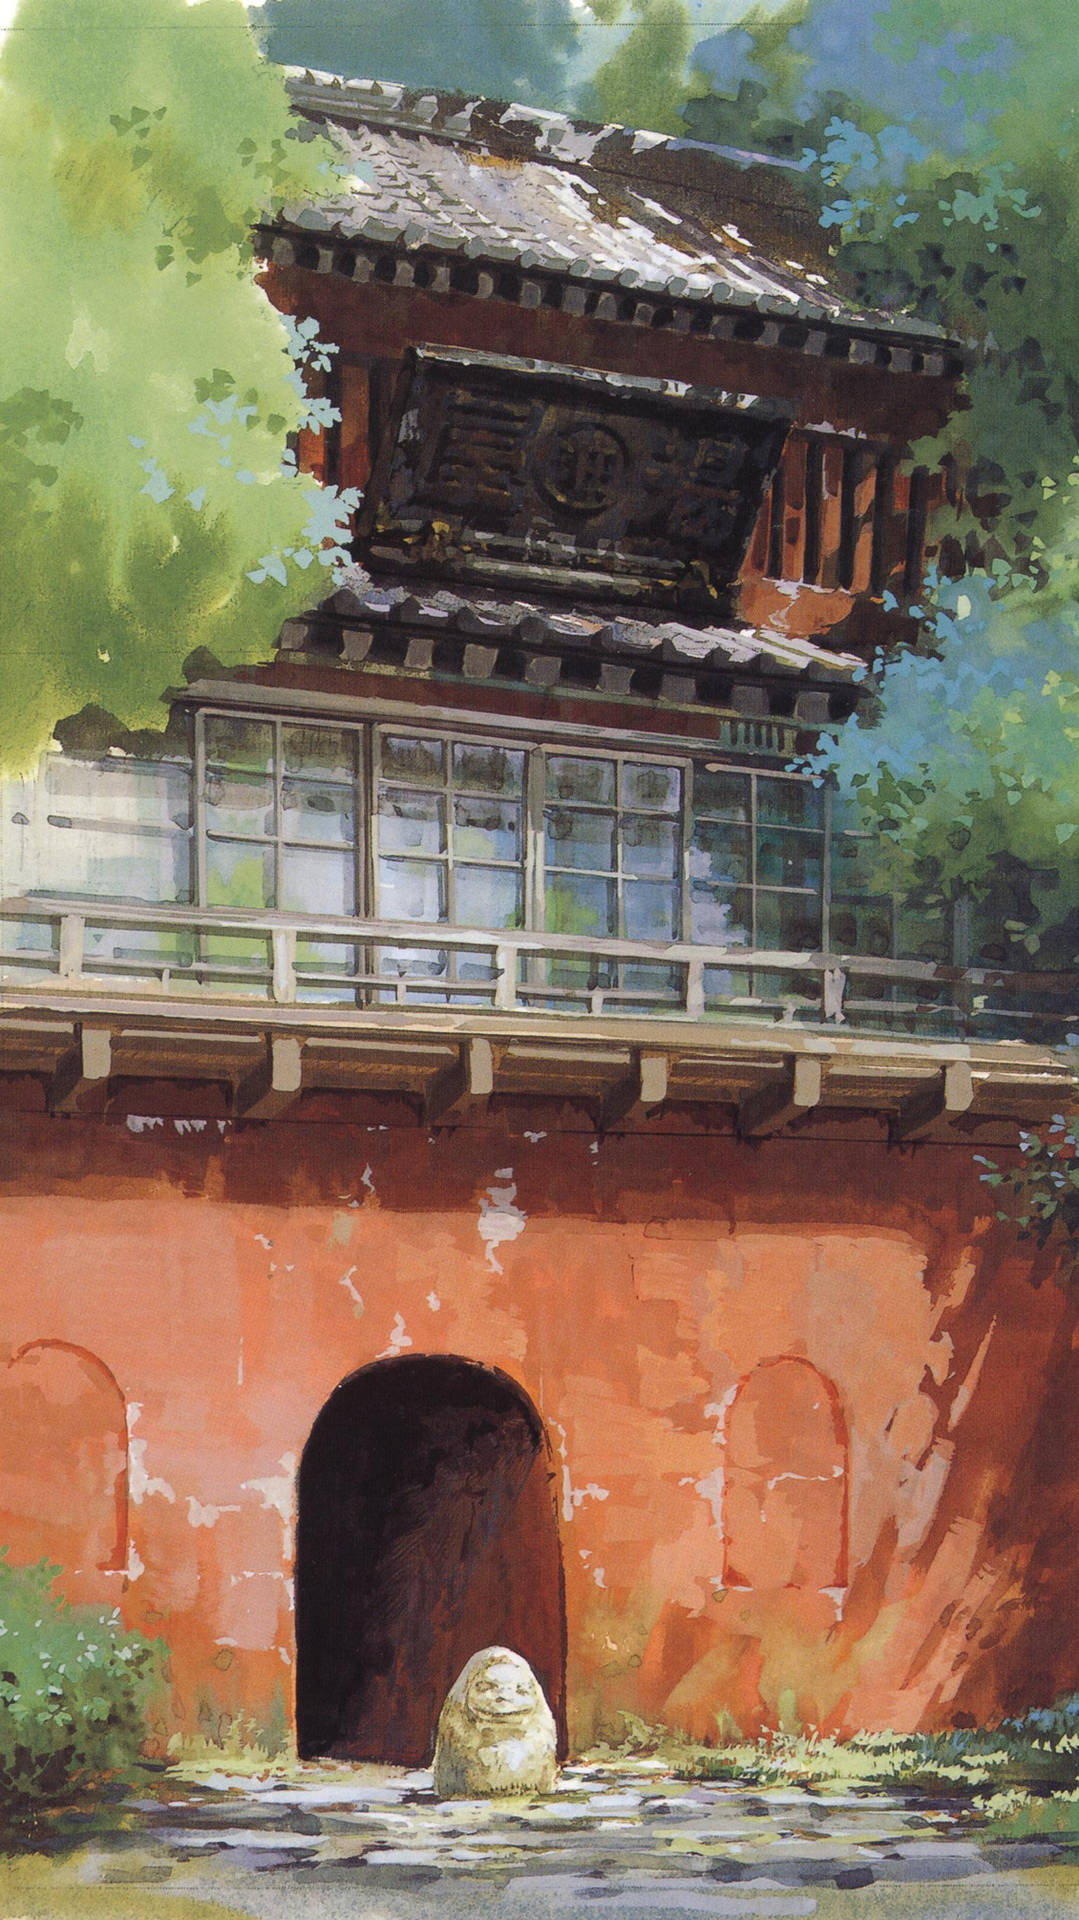 Entfesselnsie Ihren Inneren Miyazaki Mit Diesem Studio Ghibli Iphone Wallpaper. Wallpaper